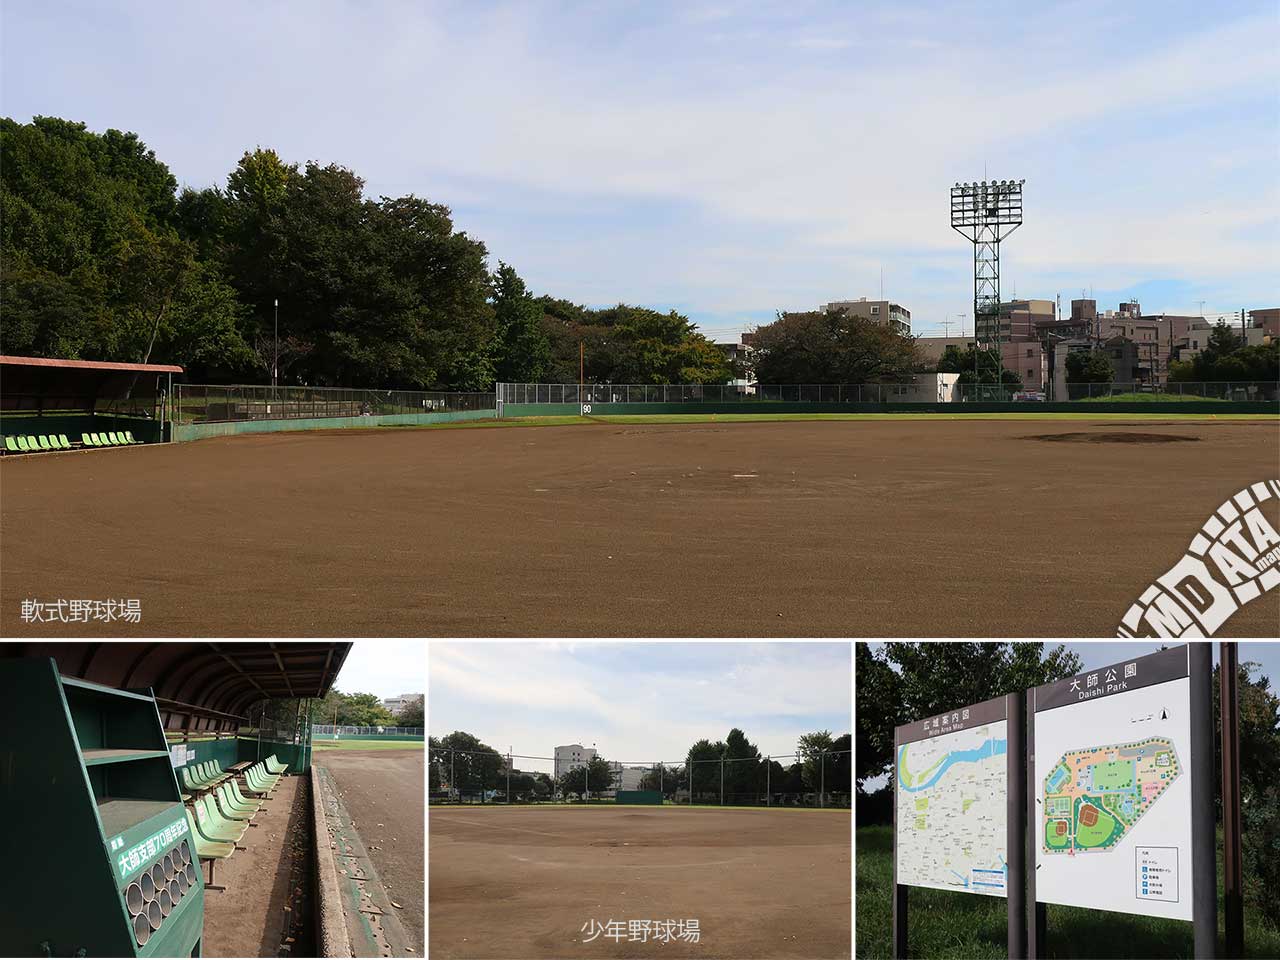 大師公園野球場の写真 Photo taken on 2022/10/27